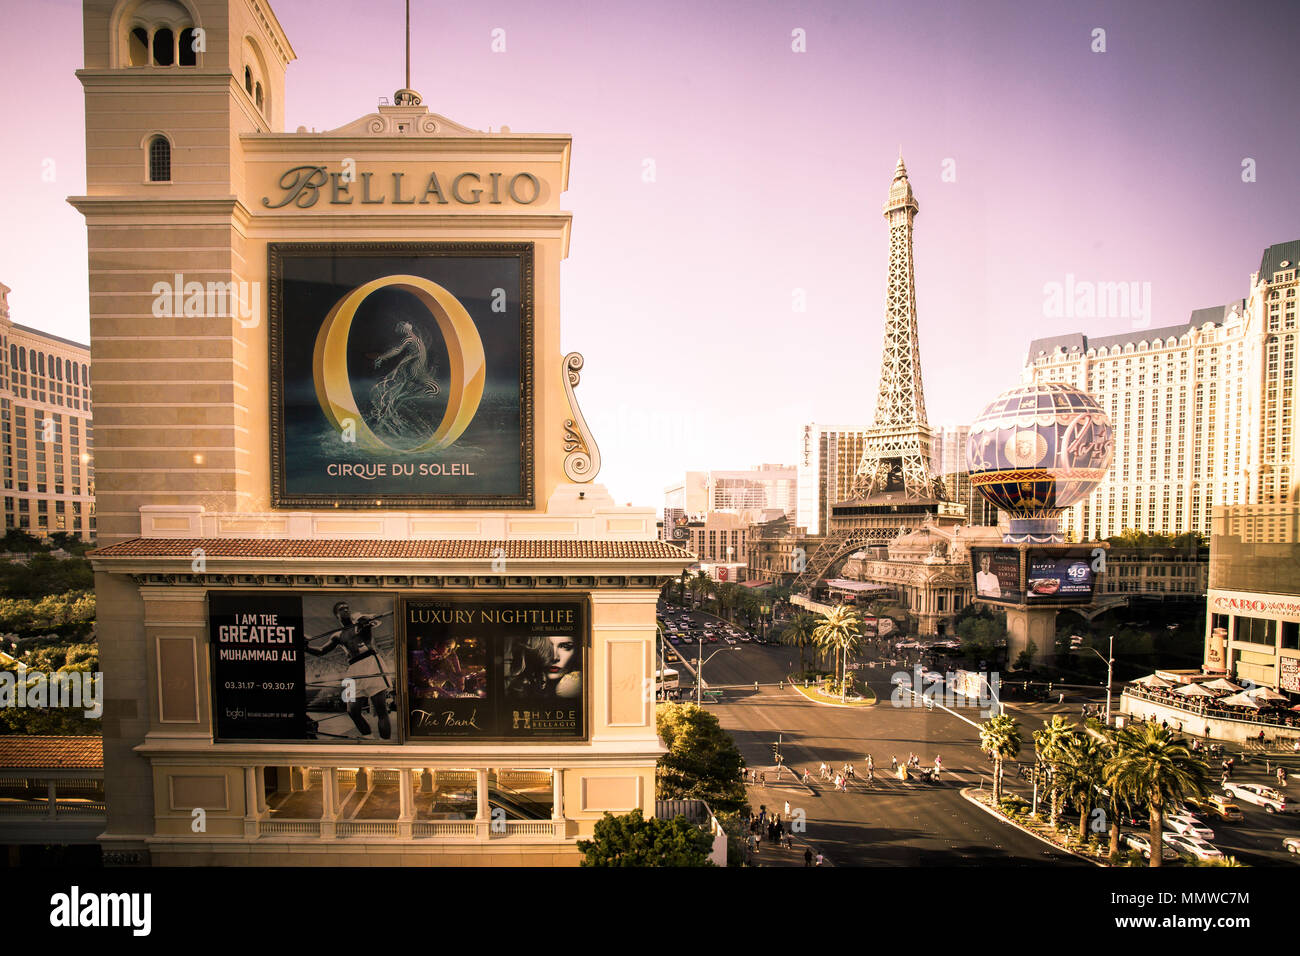 LAS VEGAS, Nevada - Mai 17, 2017: Blick auf Zeichen für Bellagio Luxury Resort in Las Vegas, Nevada mit anderen Kasinos im Hintergrund Stockfoto